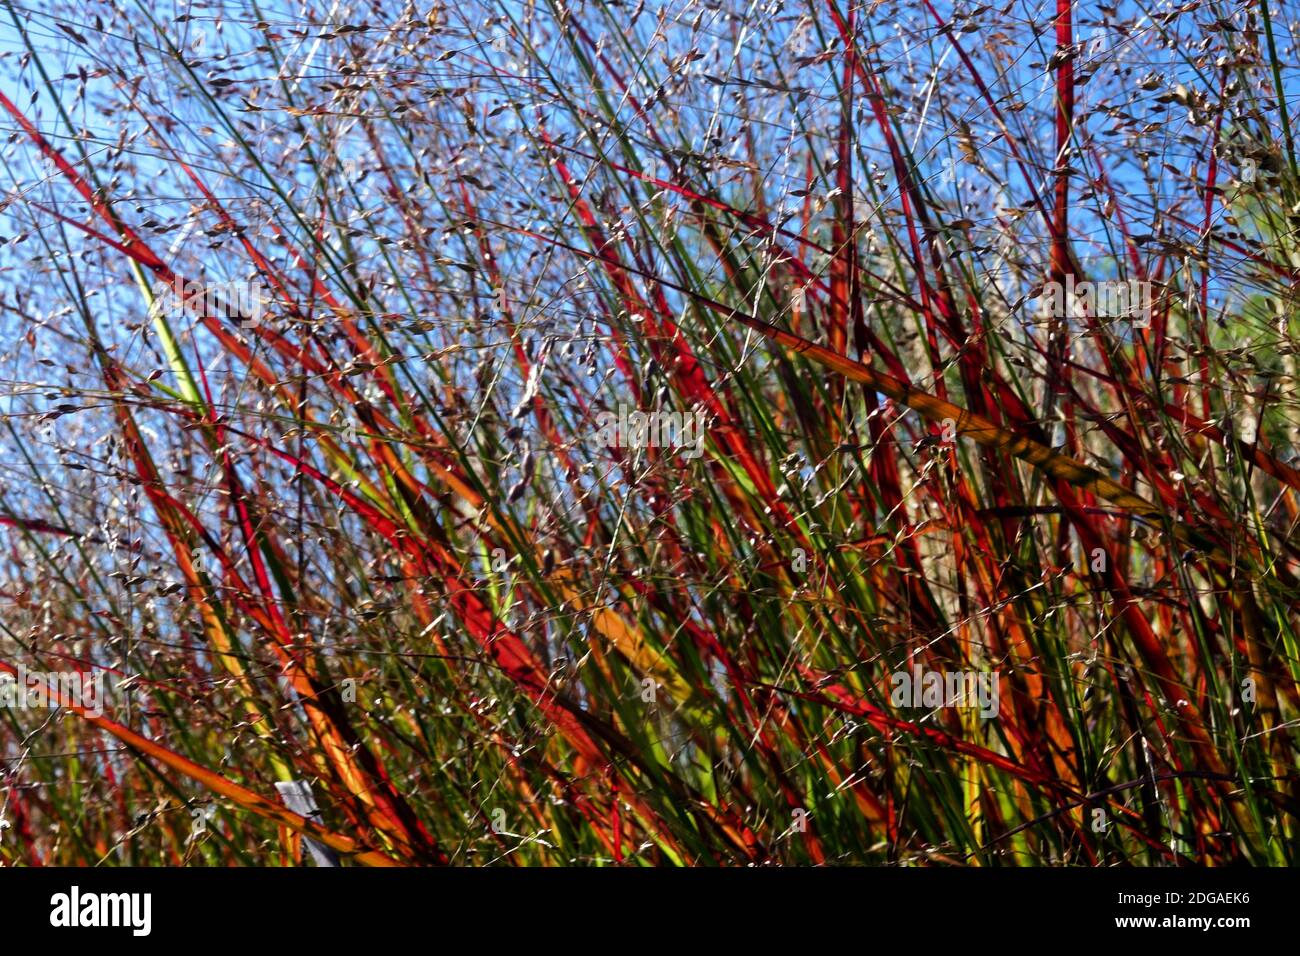 Switch Grass Panicum Shenandoah Switchgrass, Modern garden grasses, Panicum virgatum Shenandoah Stock Photo